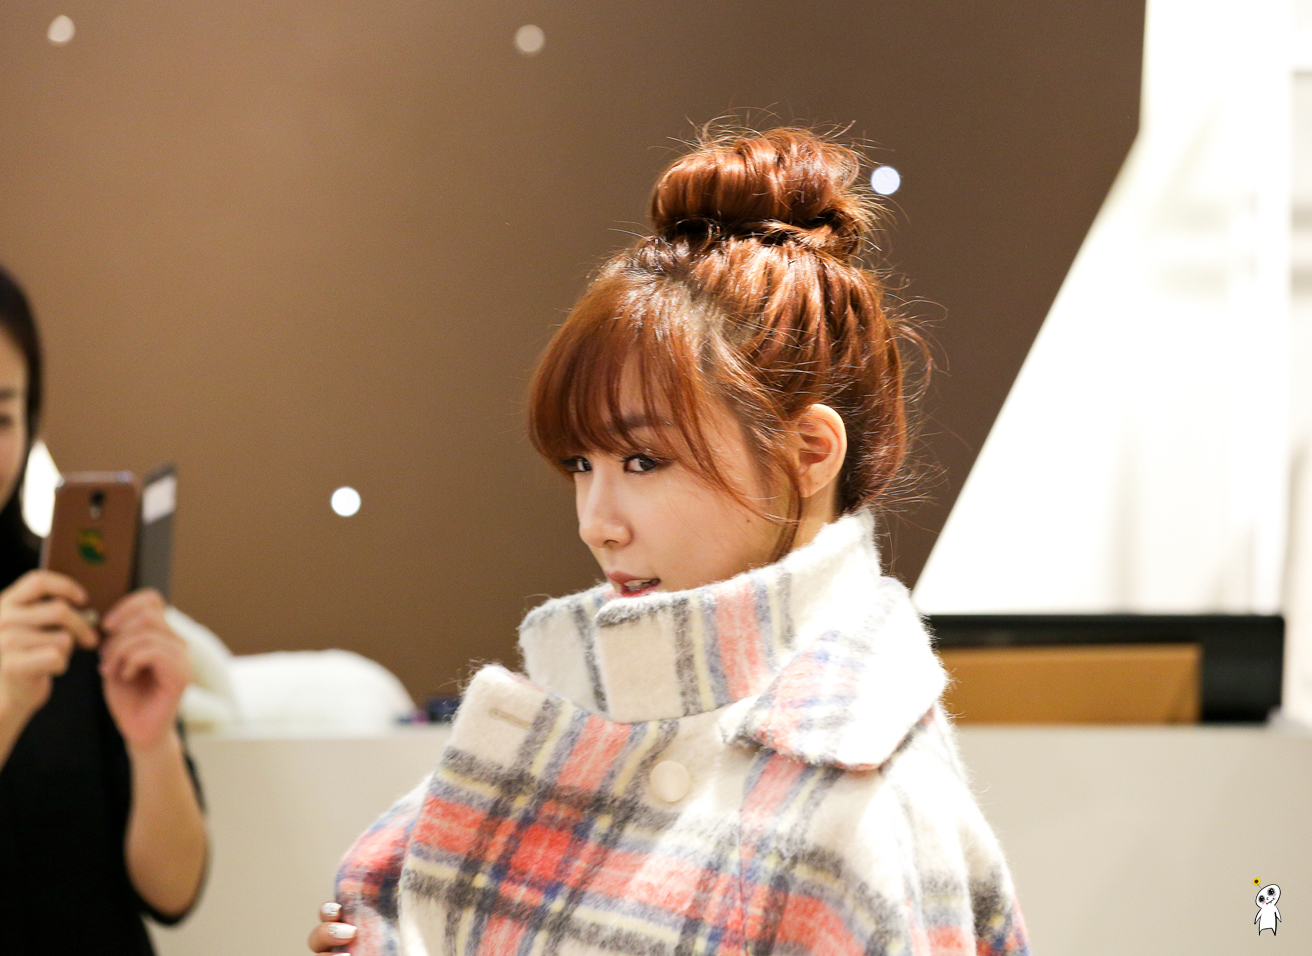 [PIC][28-11-2013]Tiffany ghé thăm cửa hàng "QUA" ở Hyundai Department Store vào trưa nay - Page 3 2108534252980C8F1472CB